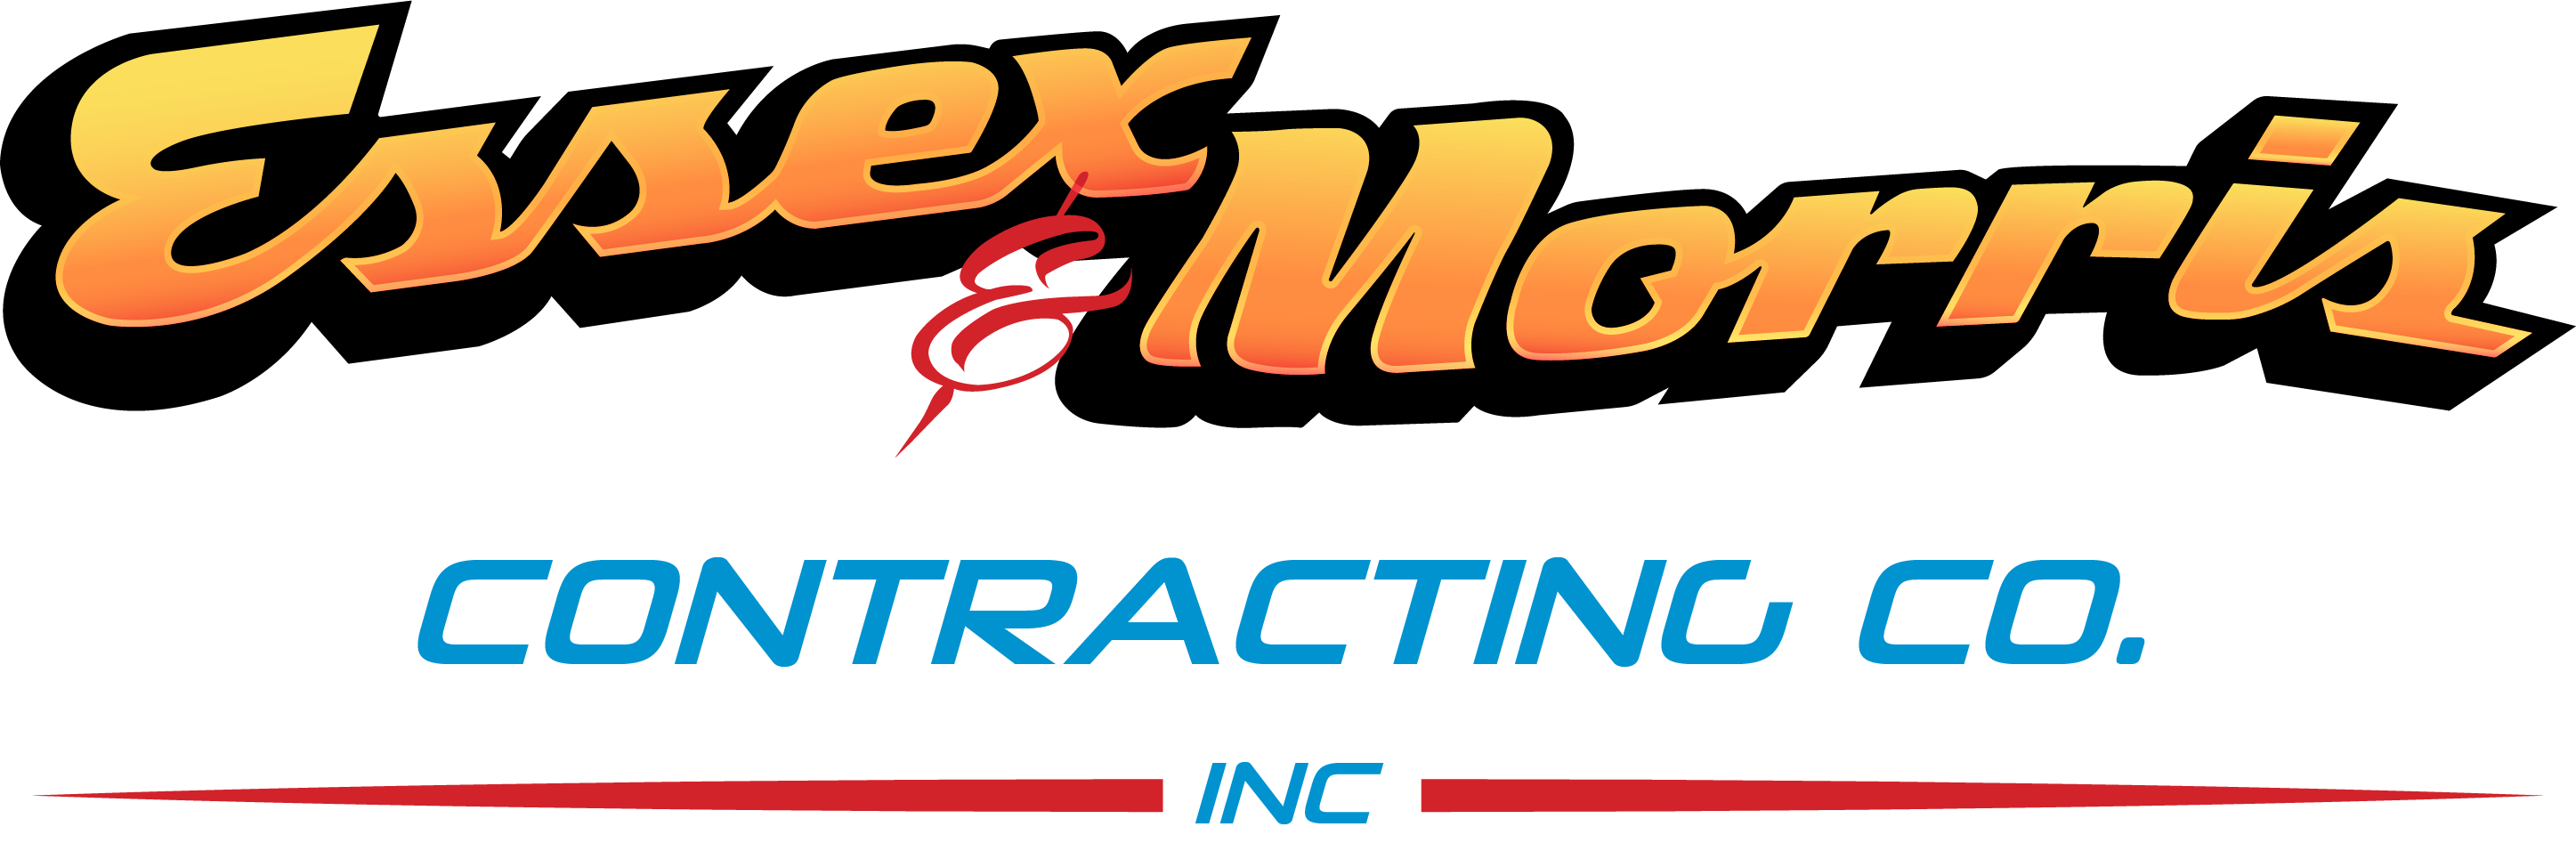 Essex & Morris Contracting Co., Inc. Logo